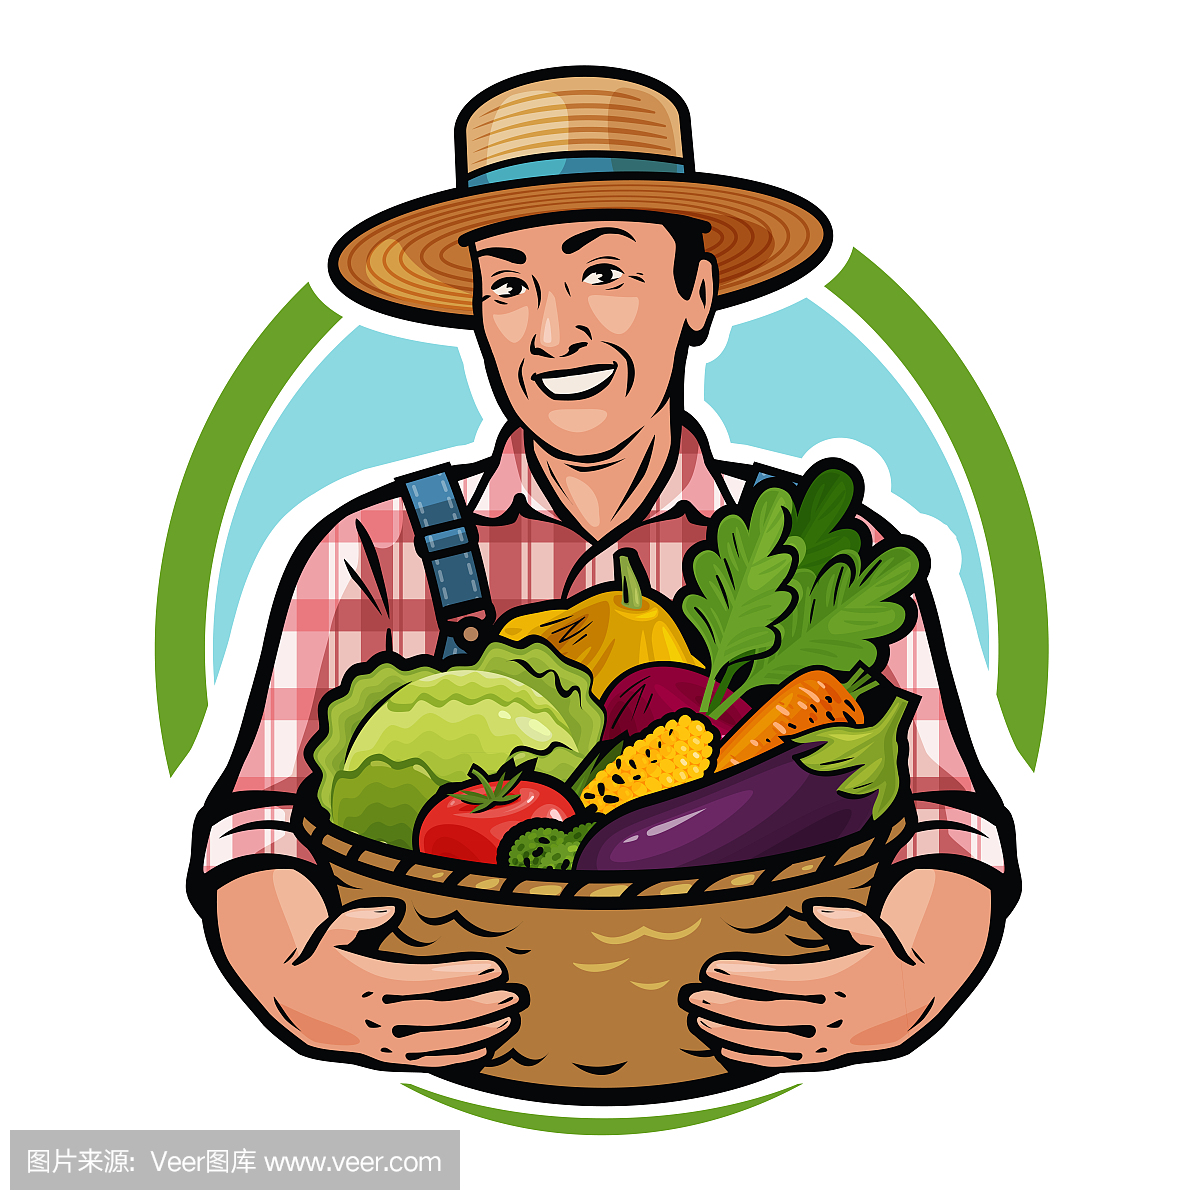 快乐的农民拿着一篮子新鲜蔬菜。农场,农业,园